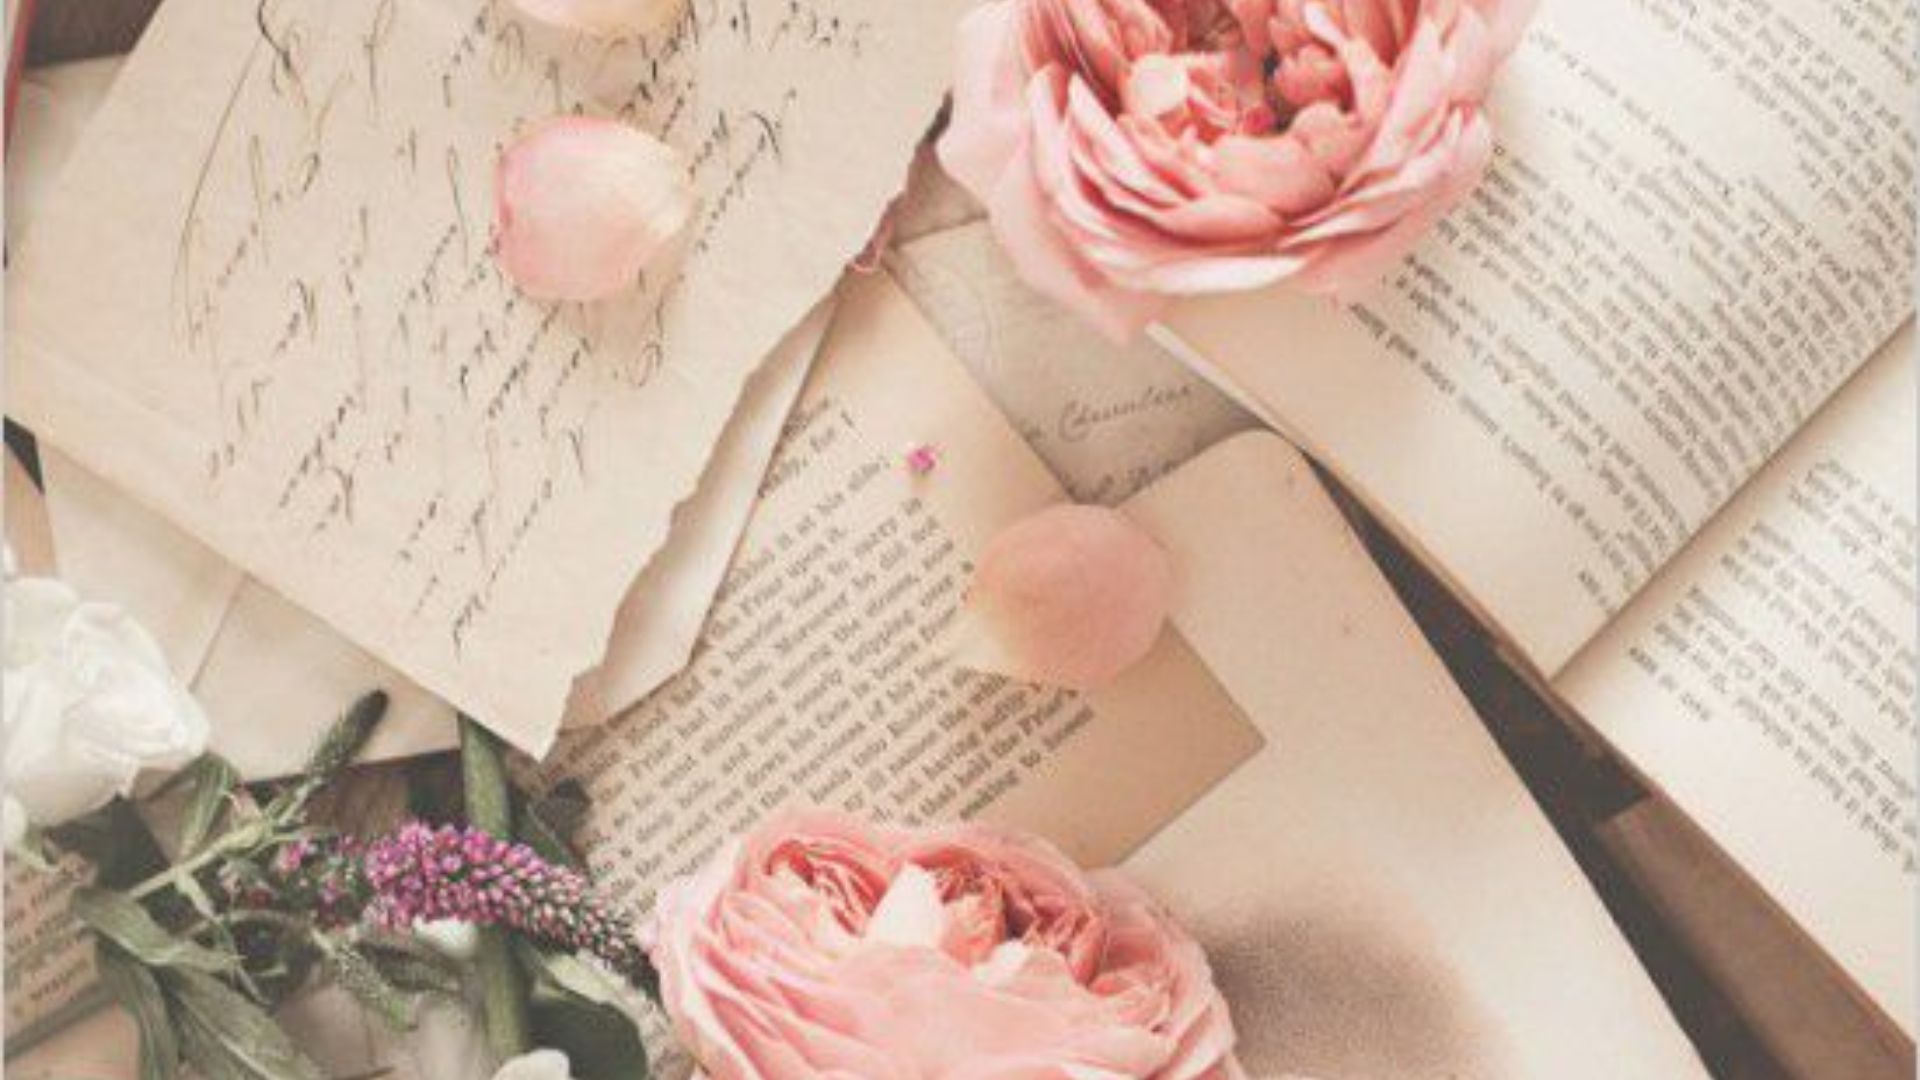 Imagem de cartas, livros e flores rosas, e algumas pétalas soltas.